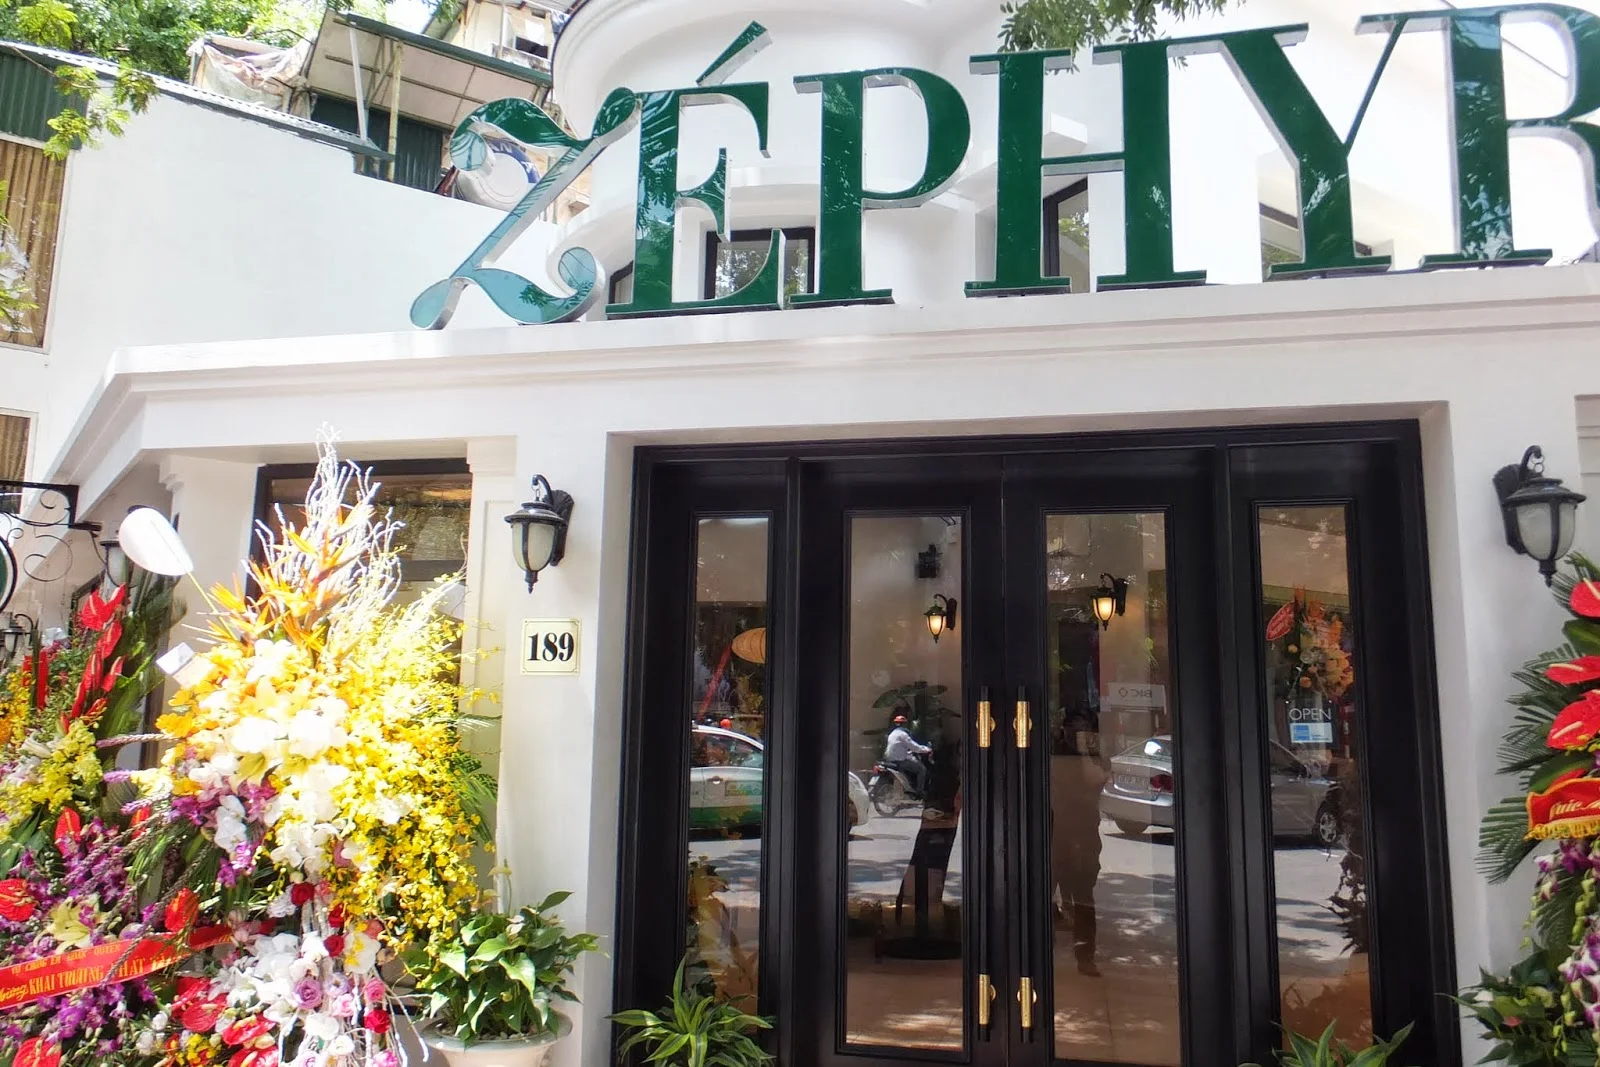 zephyr-cafe